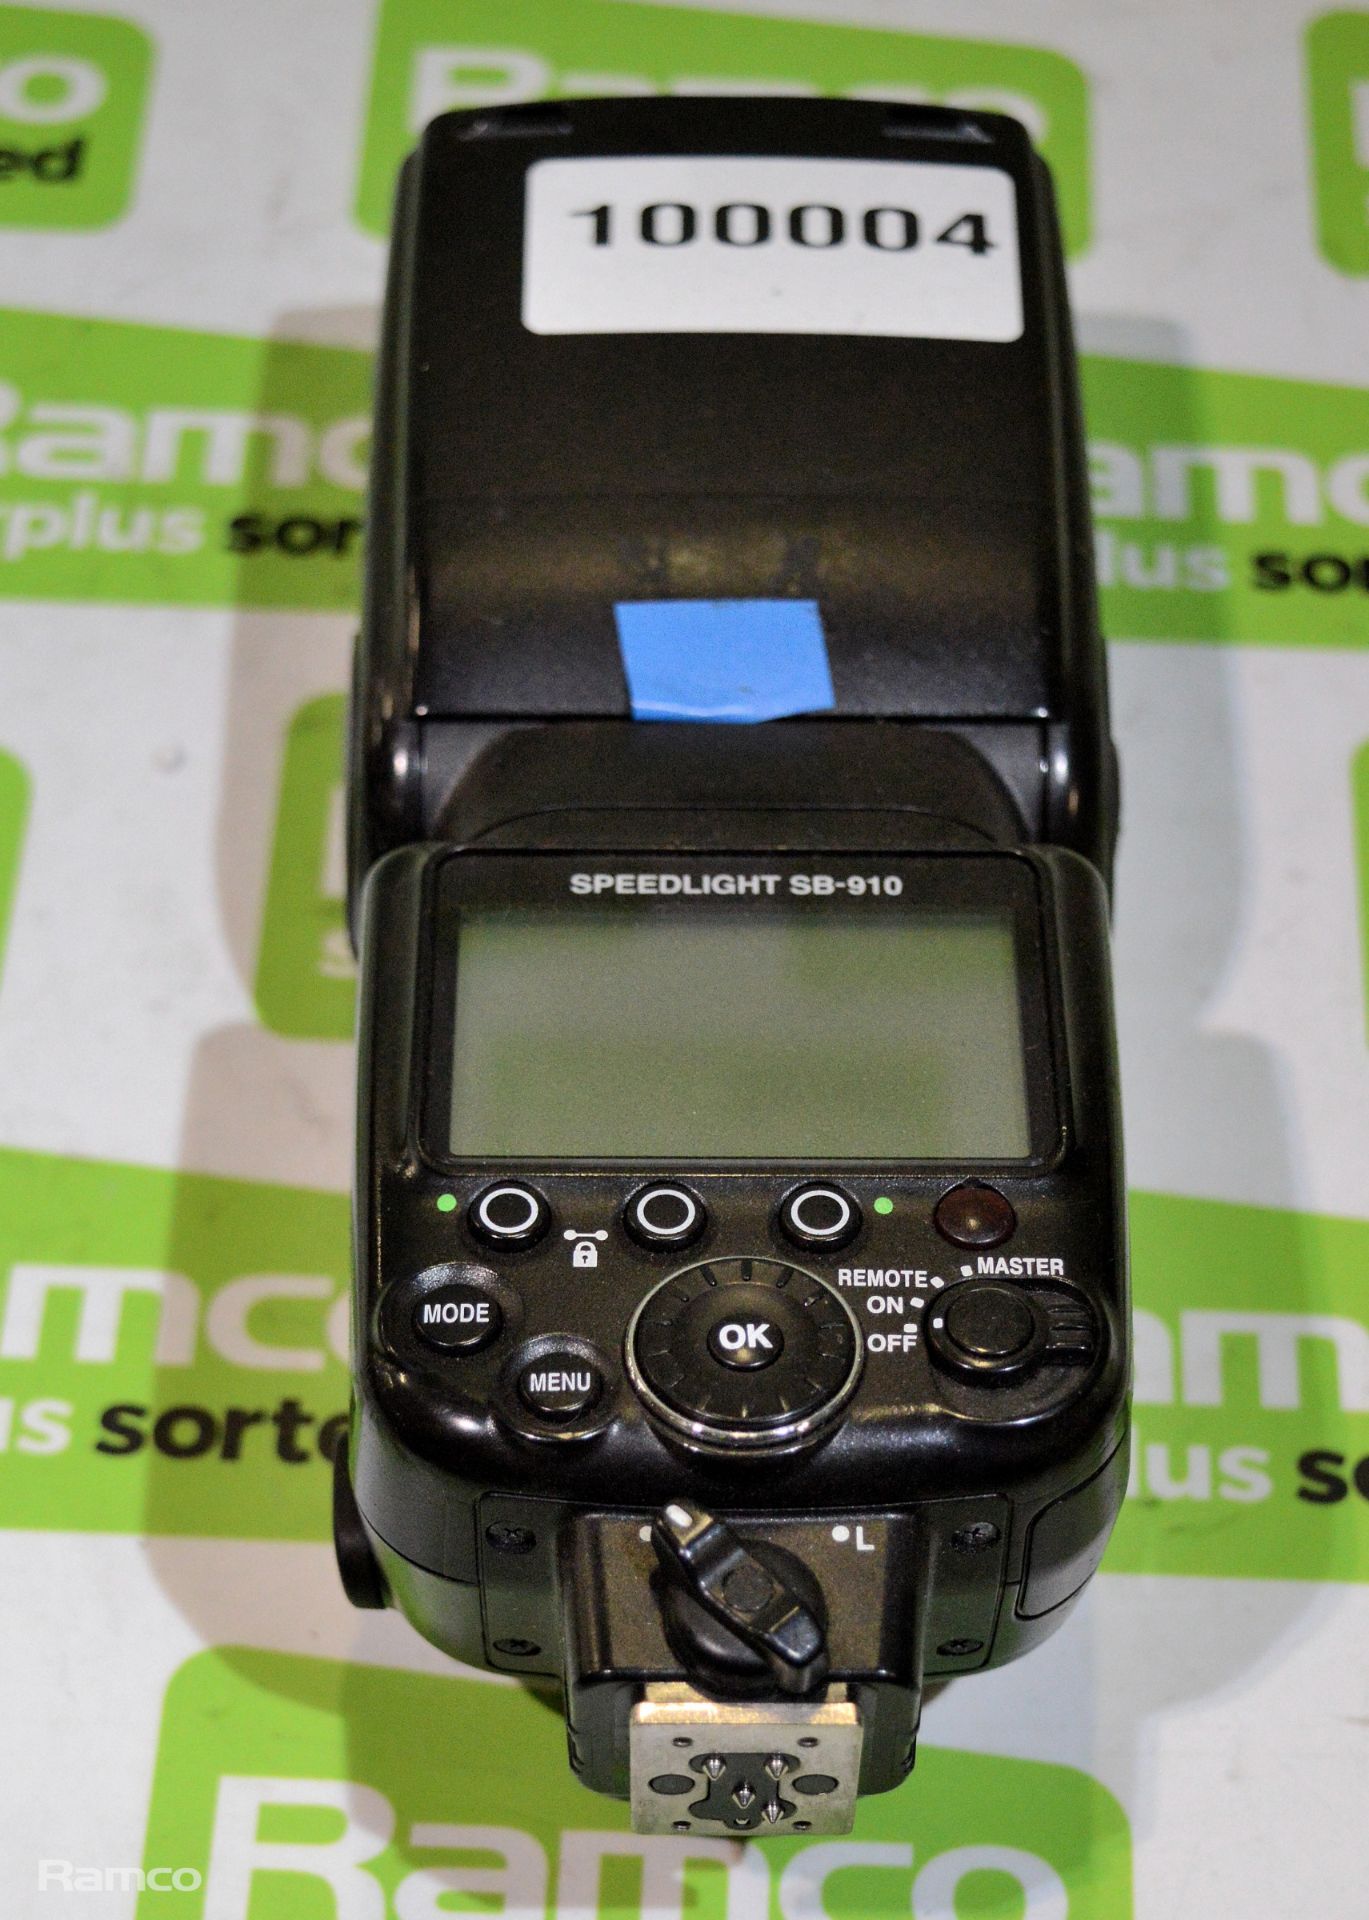 Nikon SB-910 speedlight flash - Image 2 of 3